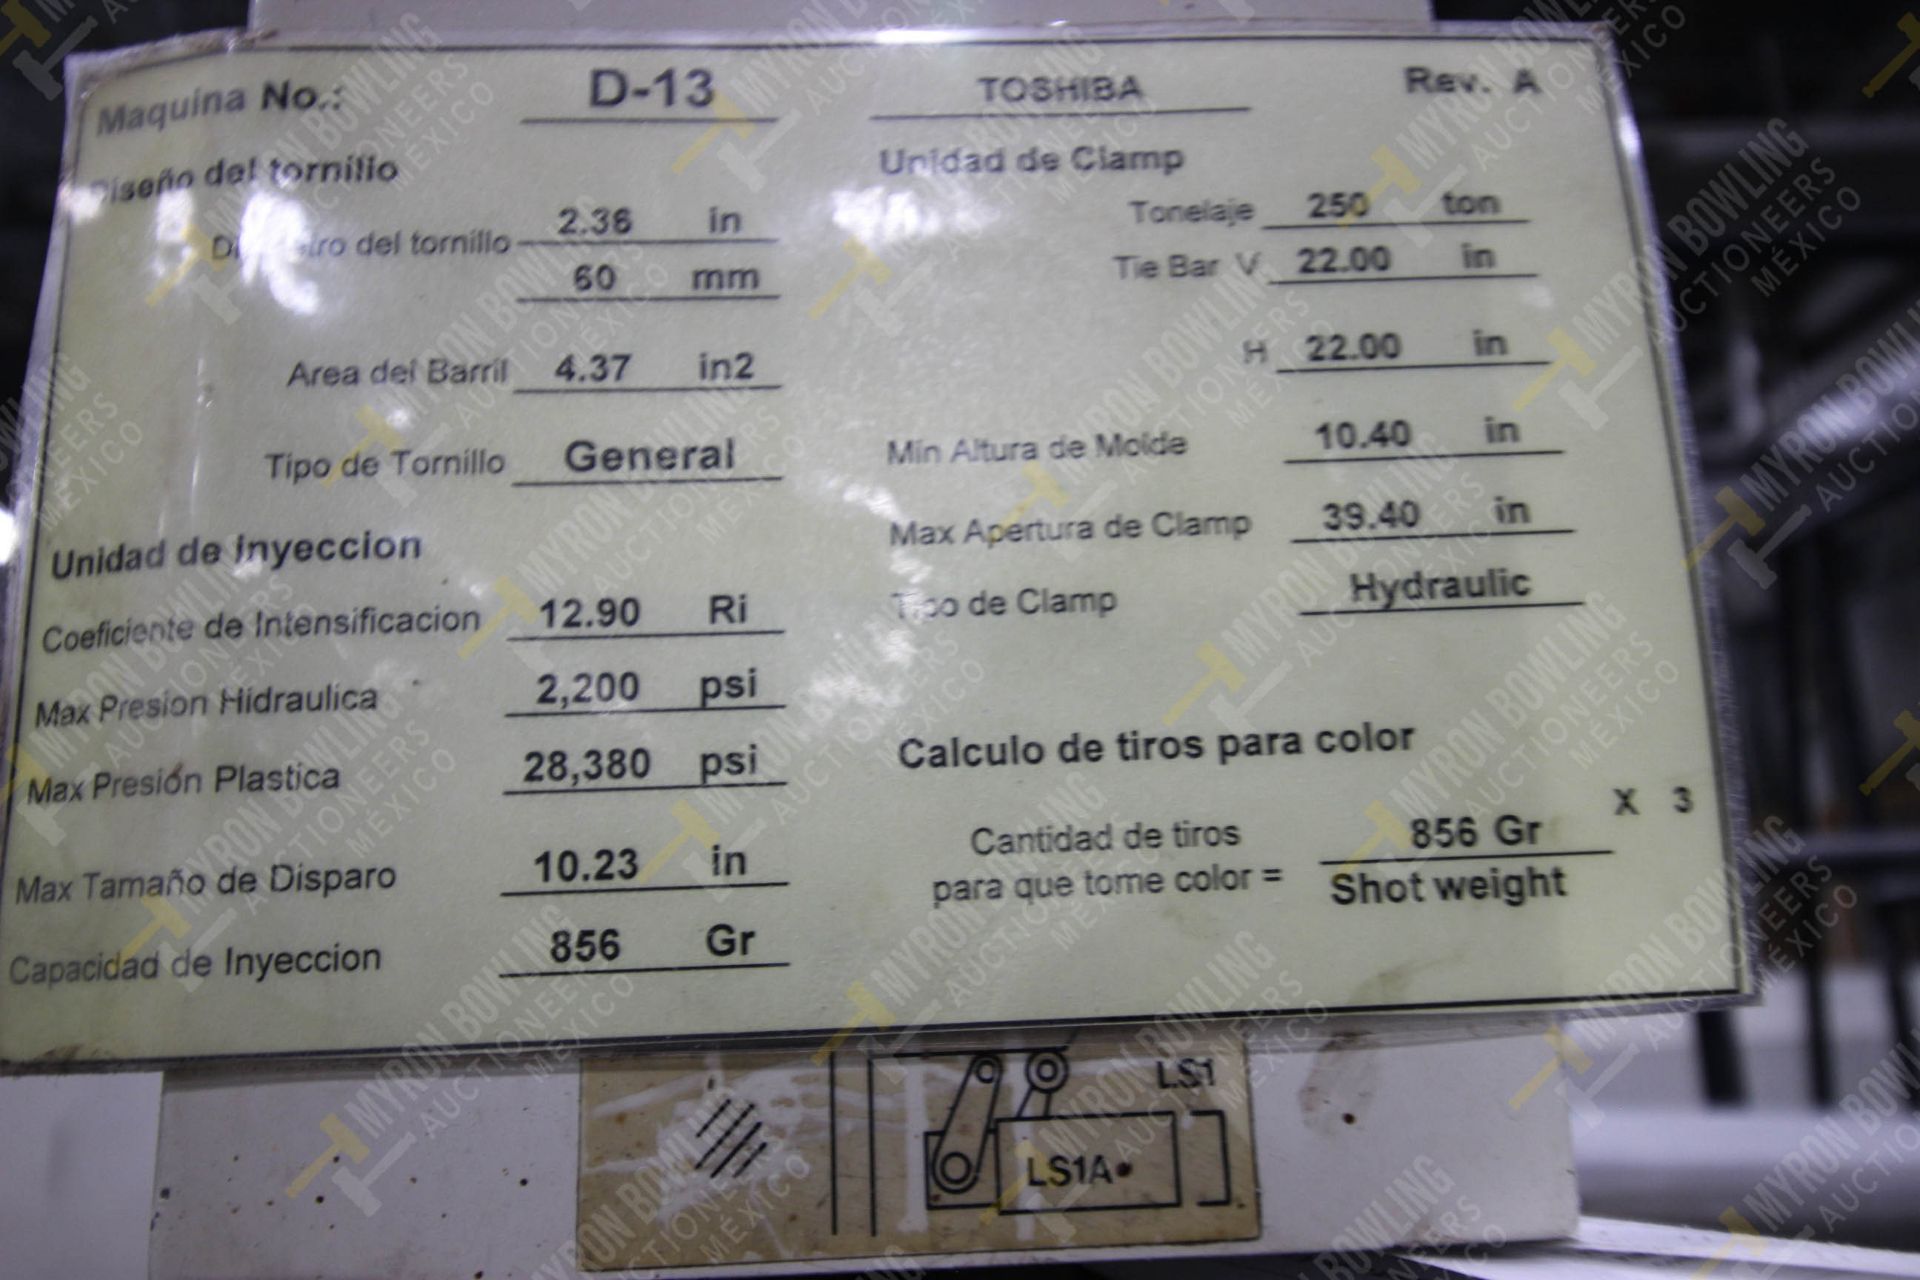 INYECTORA DE PLASTICO, MARCA TOSHIBA ISG250, NO. SERIE 748704, NO. ACTIVO D13, AÑO 1997, MODELO ISG - Image 12 of 13